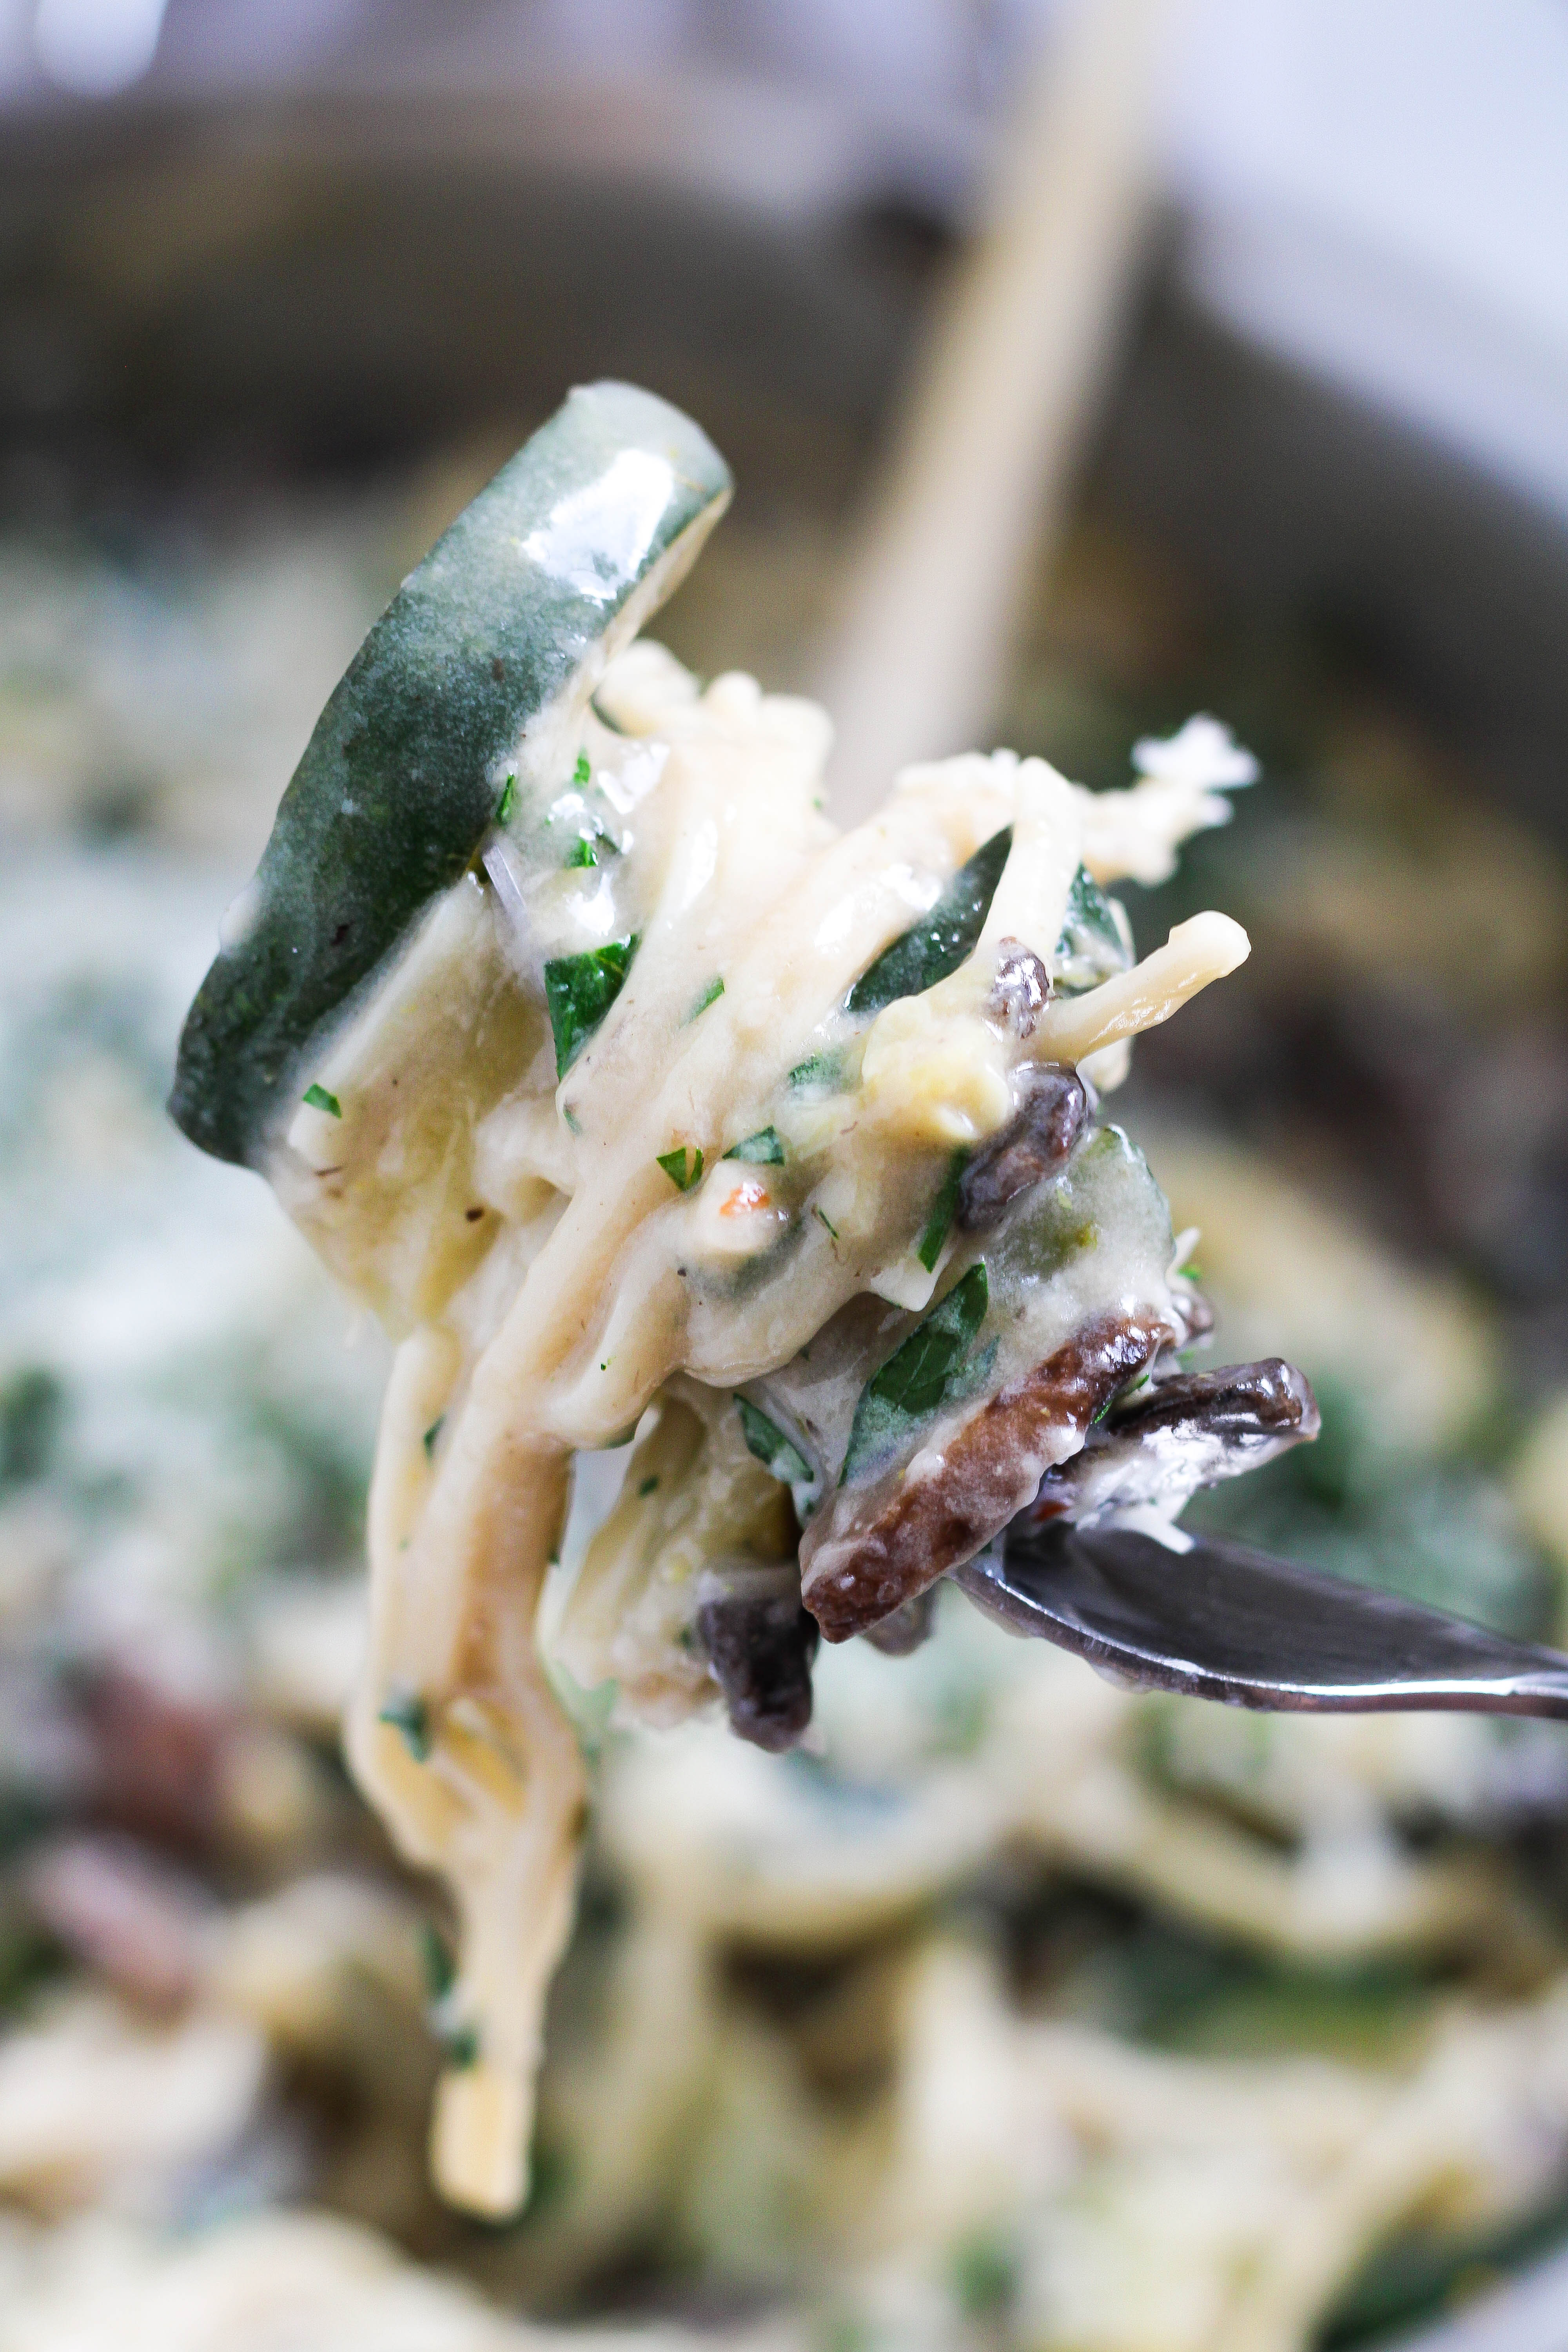 forkful of twirled mushroom zucchini pasta